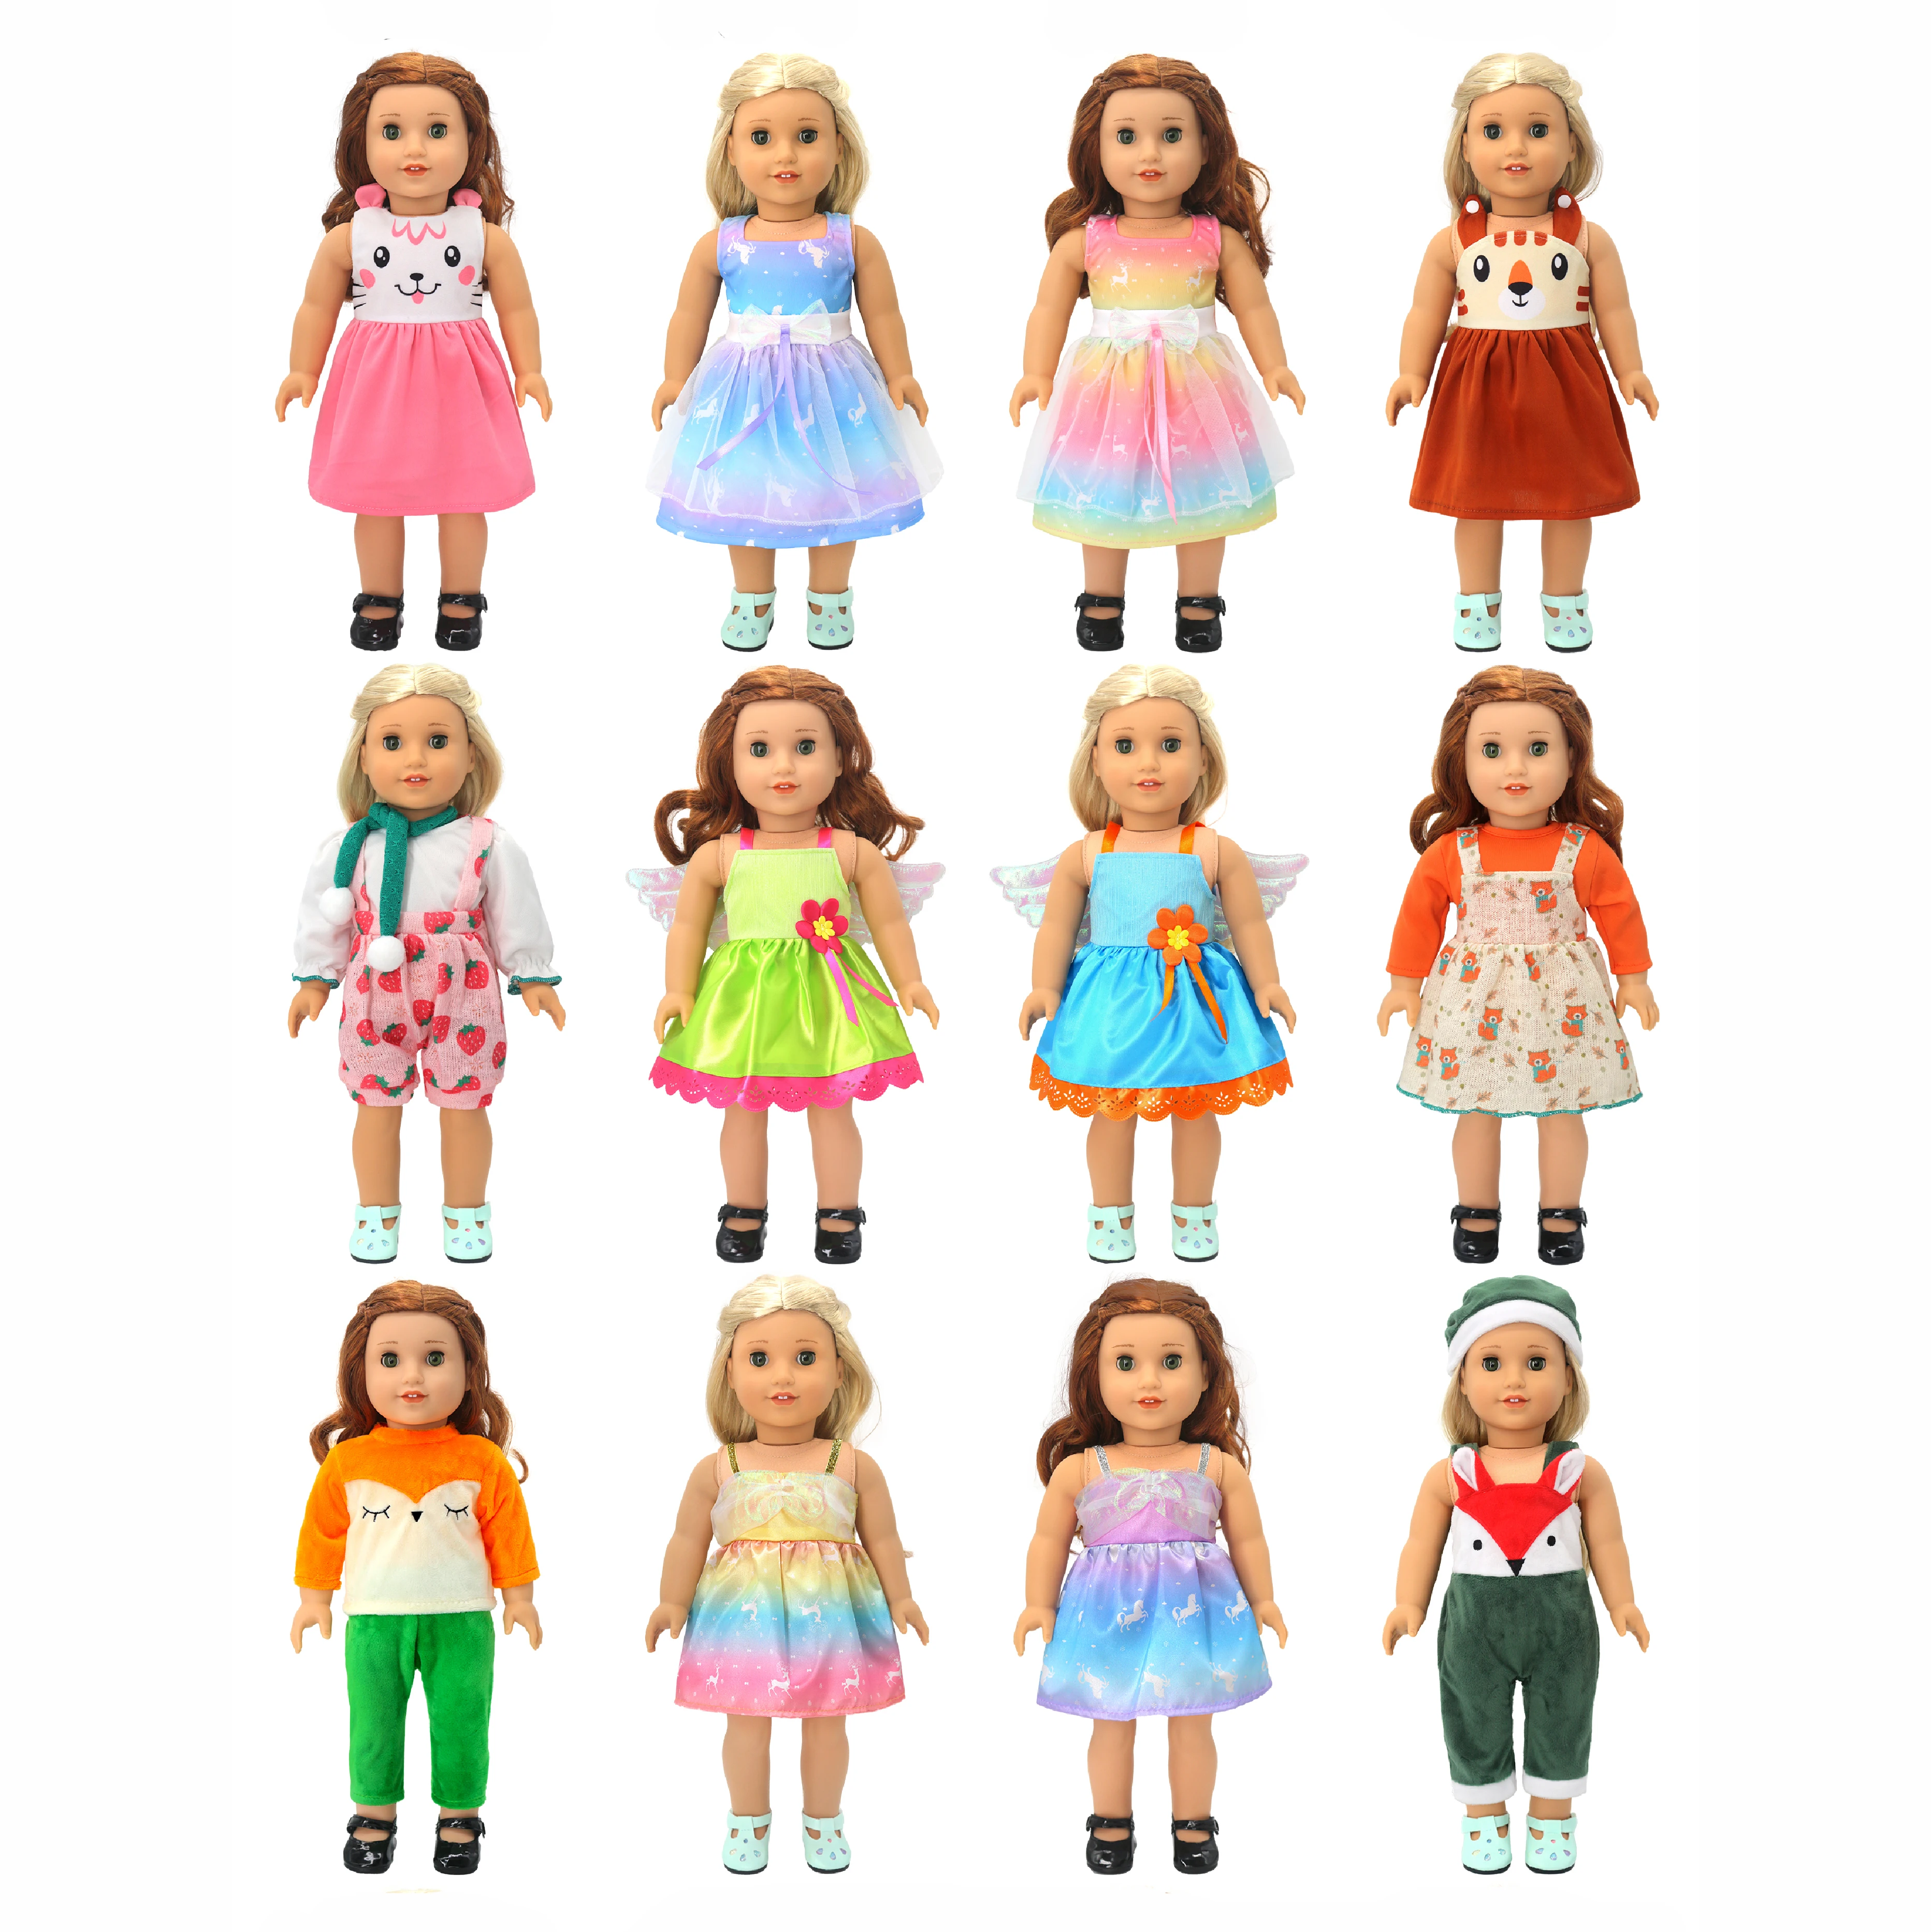 2023 Yeni yaz elbisesi için Uygun Amerikan Kız oyuncak bebek giysileri 18 inç Bebek, Noel Kız Hediye(sadece giysi satmak)